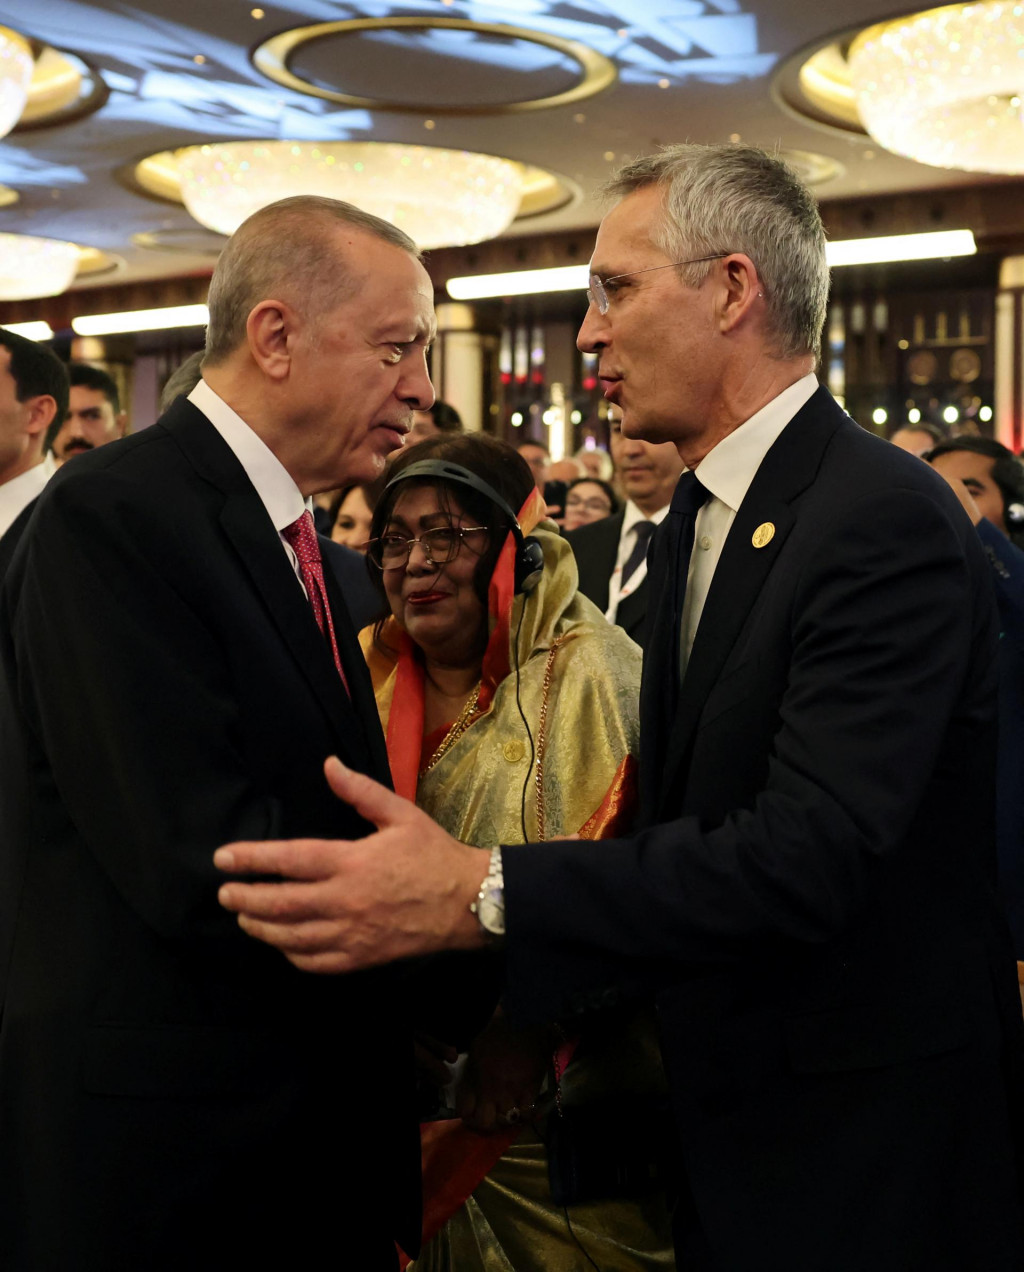 Turecký prezident Tayyip Erdogan víta generálneho tajomníka NATO Jensa Stoltenberga počas jeho inauguračného ceremoniálu v Prezidentskom paláci v Ankare. FOTO: Reuters